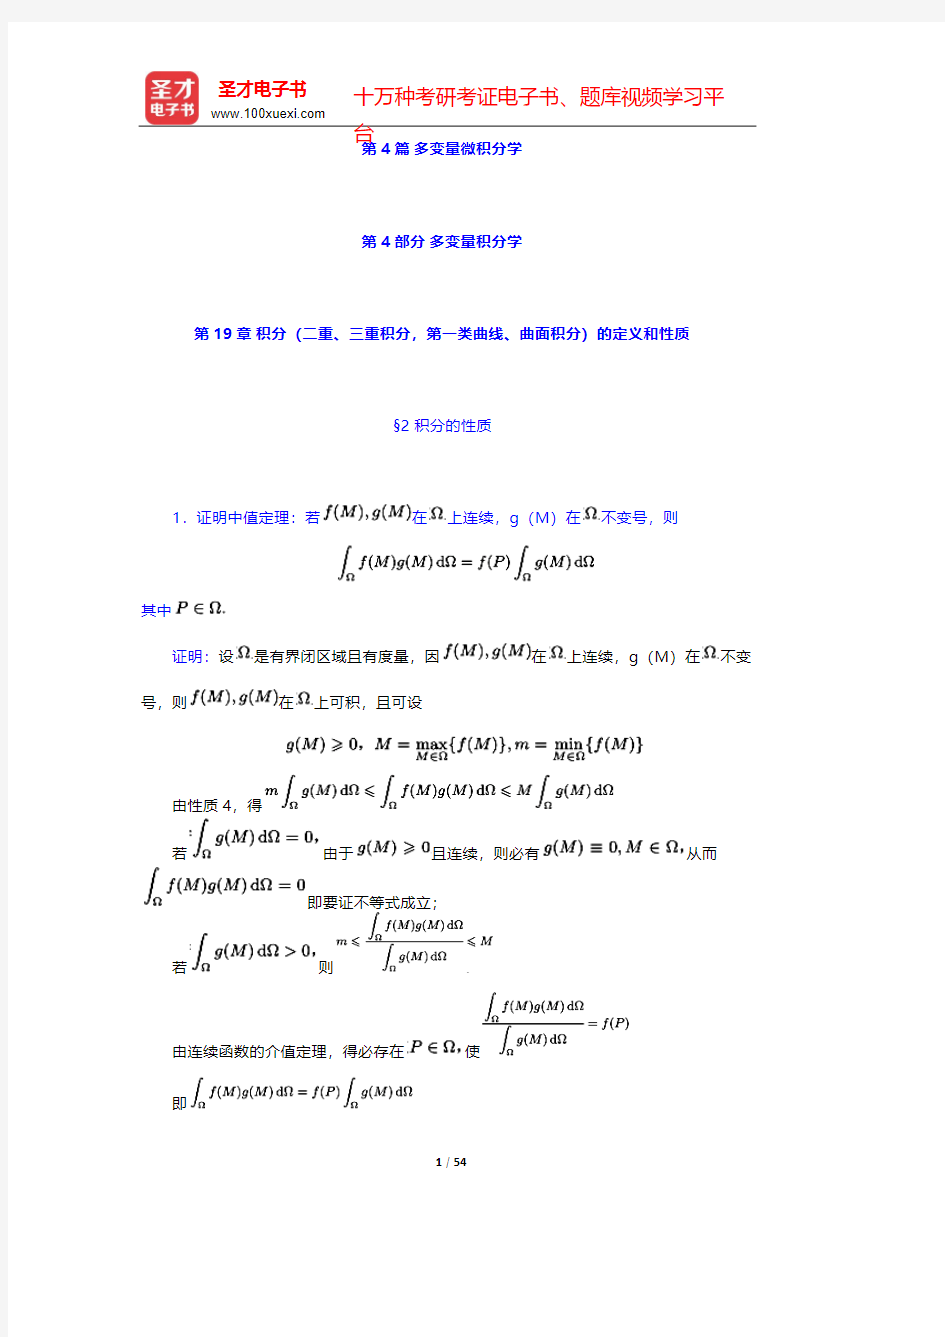 复旦大学数学系《数学分析》(第3版)(下册)课后习题-多变量微积分学-多变量积分学【圣才出品】